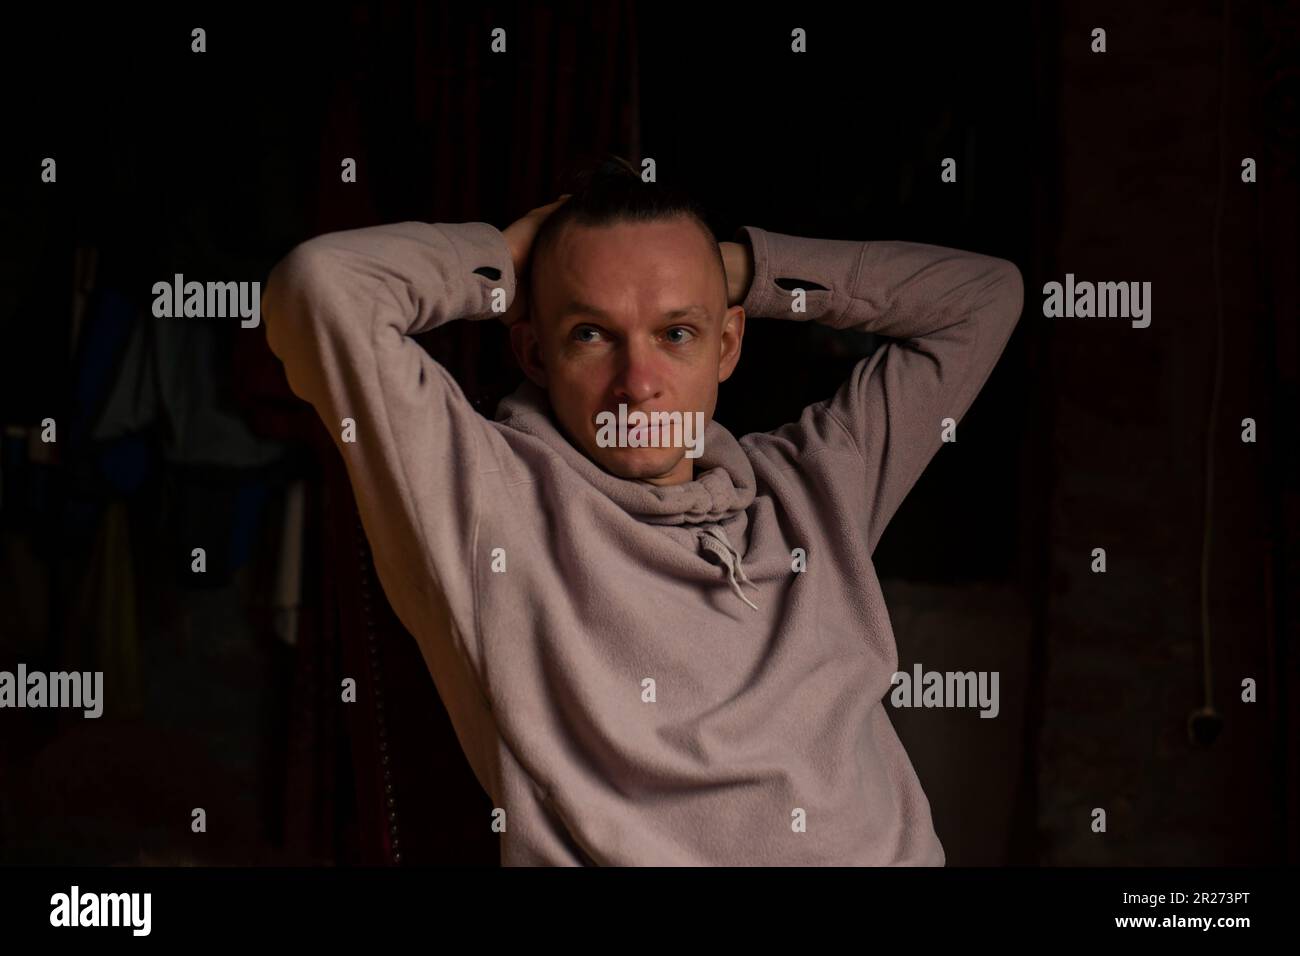 Ein unachtsamer Mann mittleren Alters in einem dunklen Raum. Entspannte Haltung, Hände hinter den Kopf. Dunkler Hintergrund, Freizeitkleidung. Stockfoto